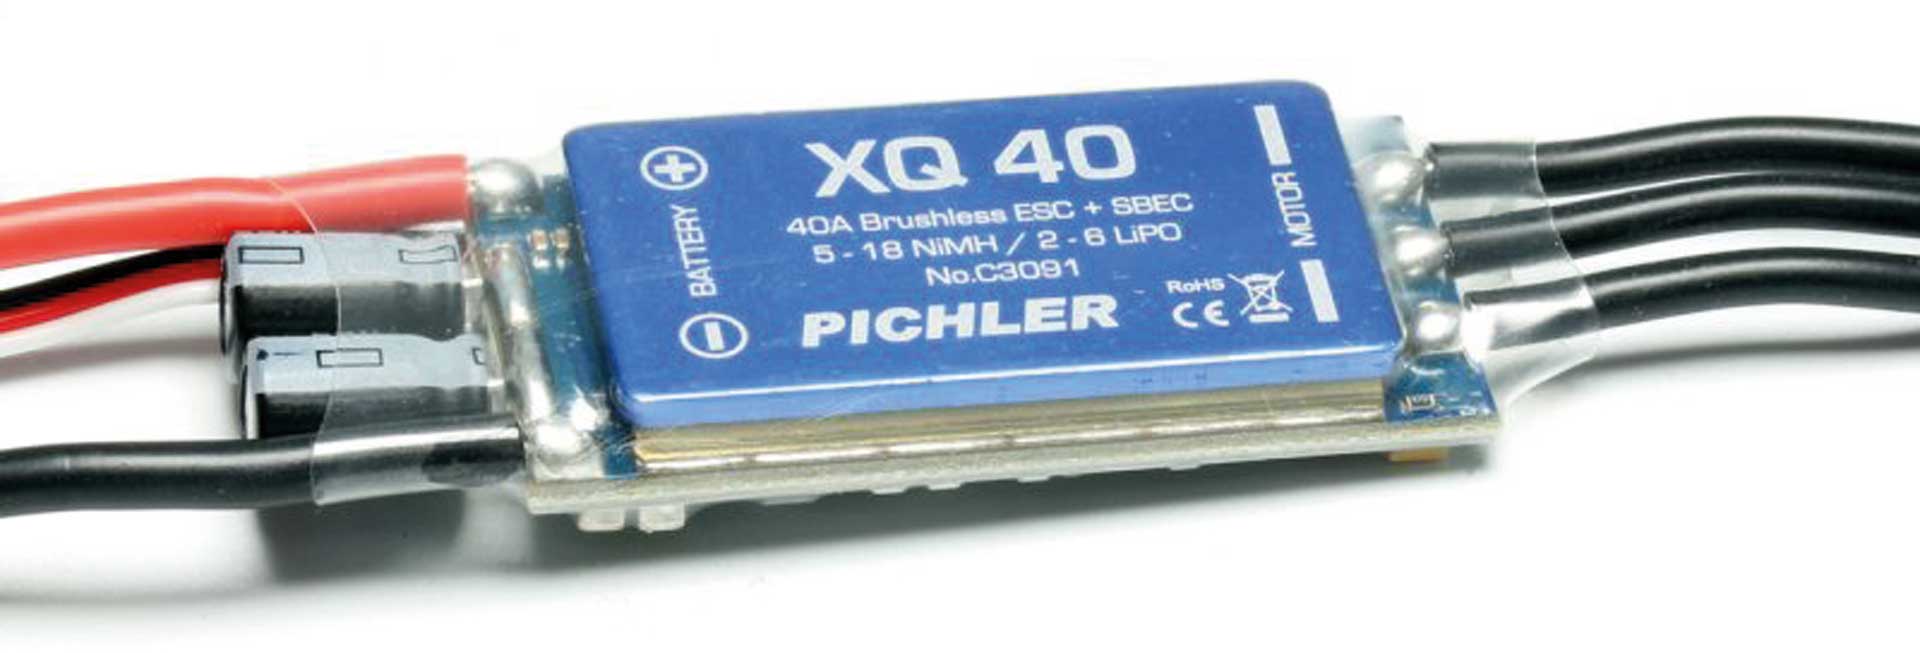 PICHLER XQ 40 régulateur brushless 2-6S 40A 5A BEC